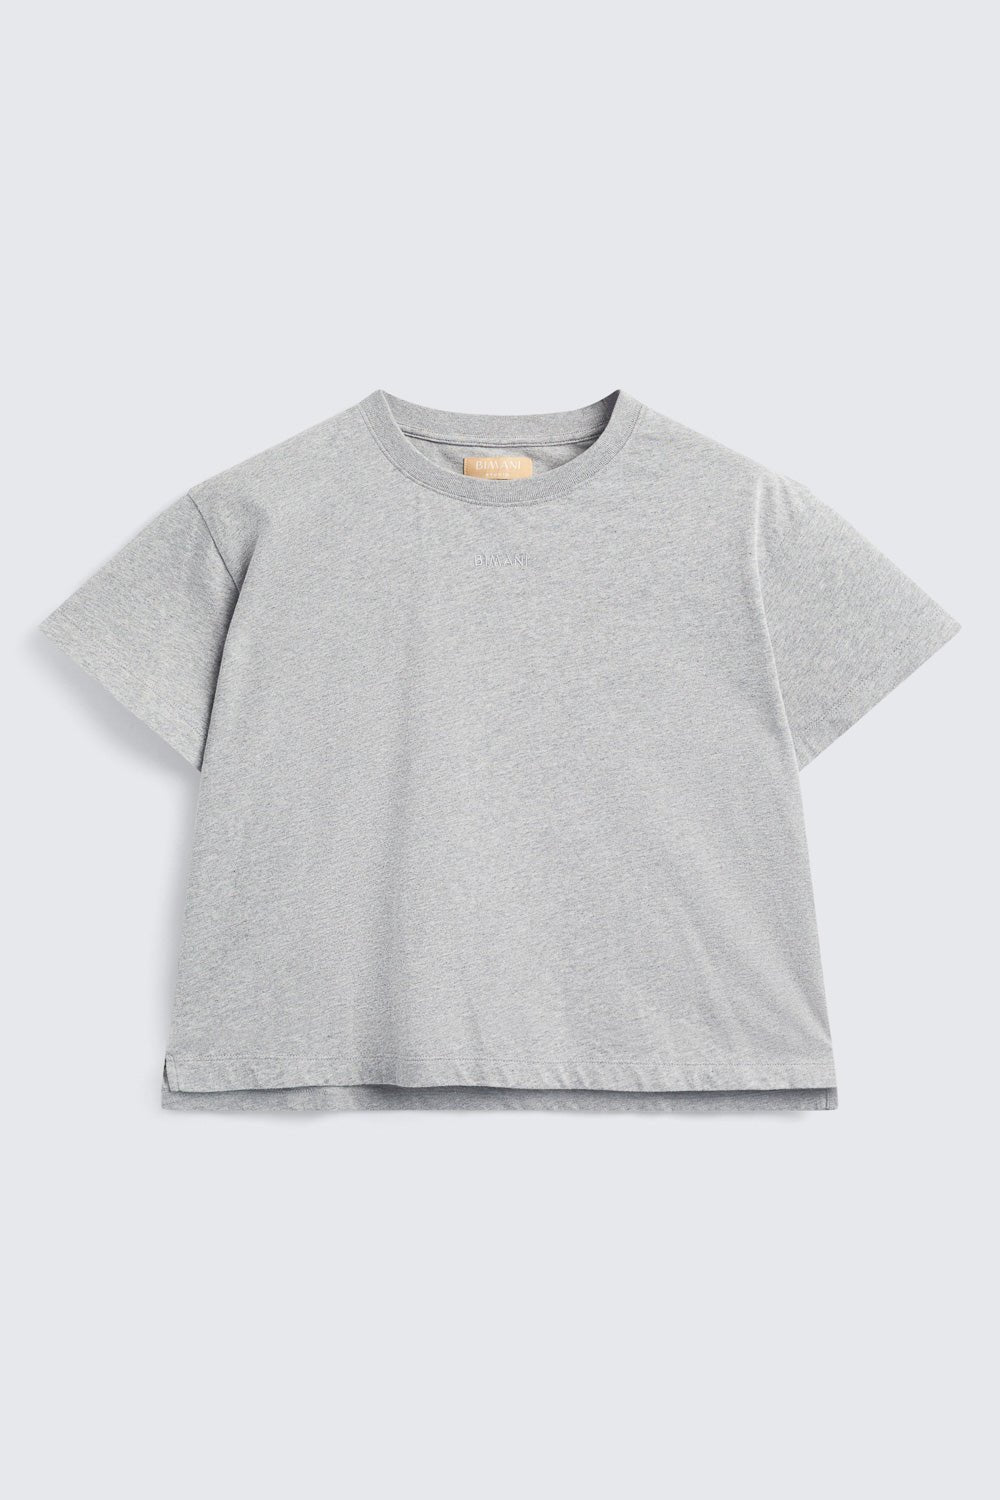 Camiseta ASPEN Grey - BIMANI